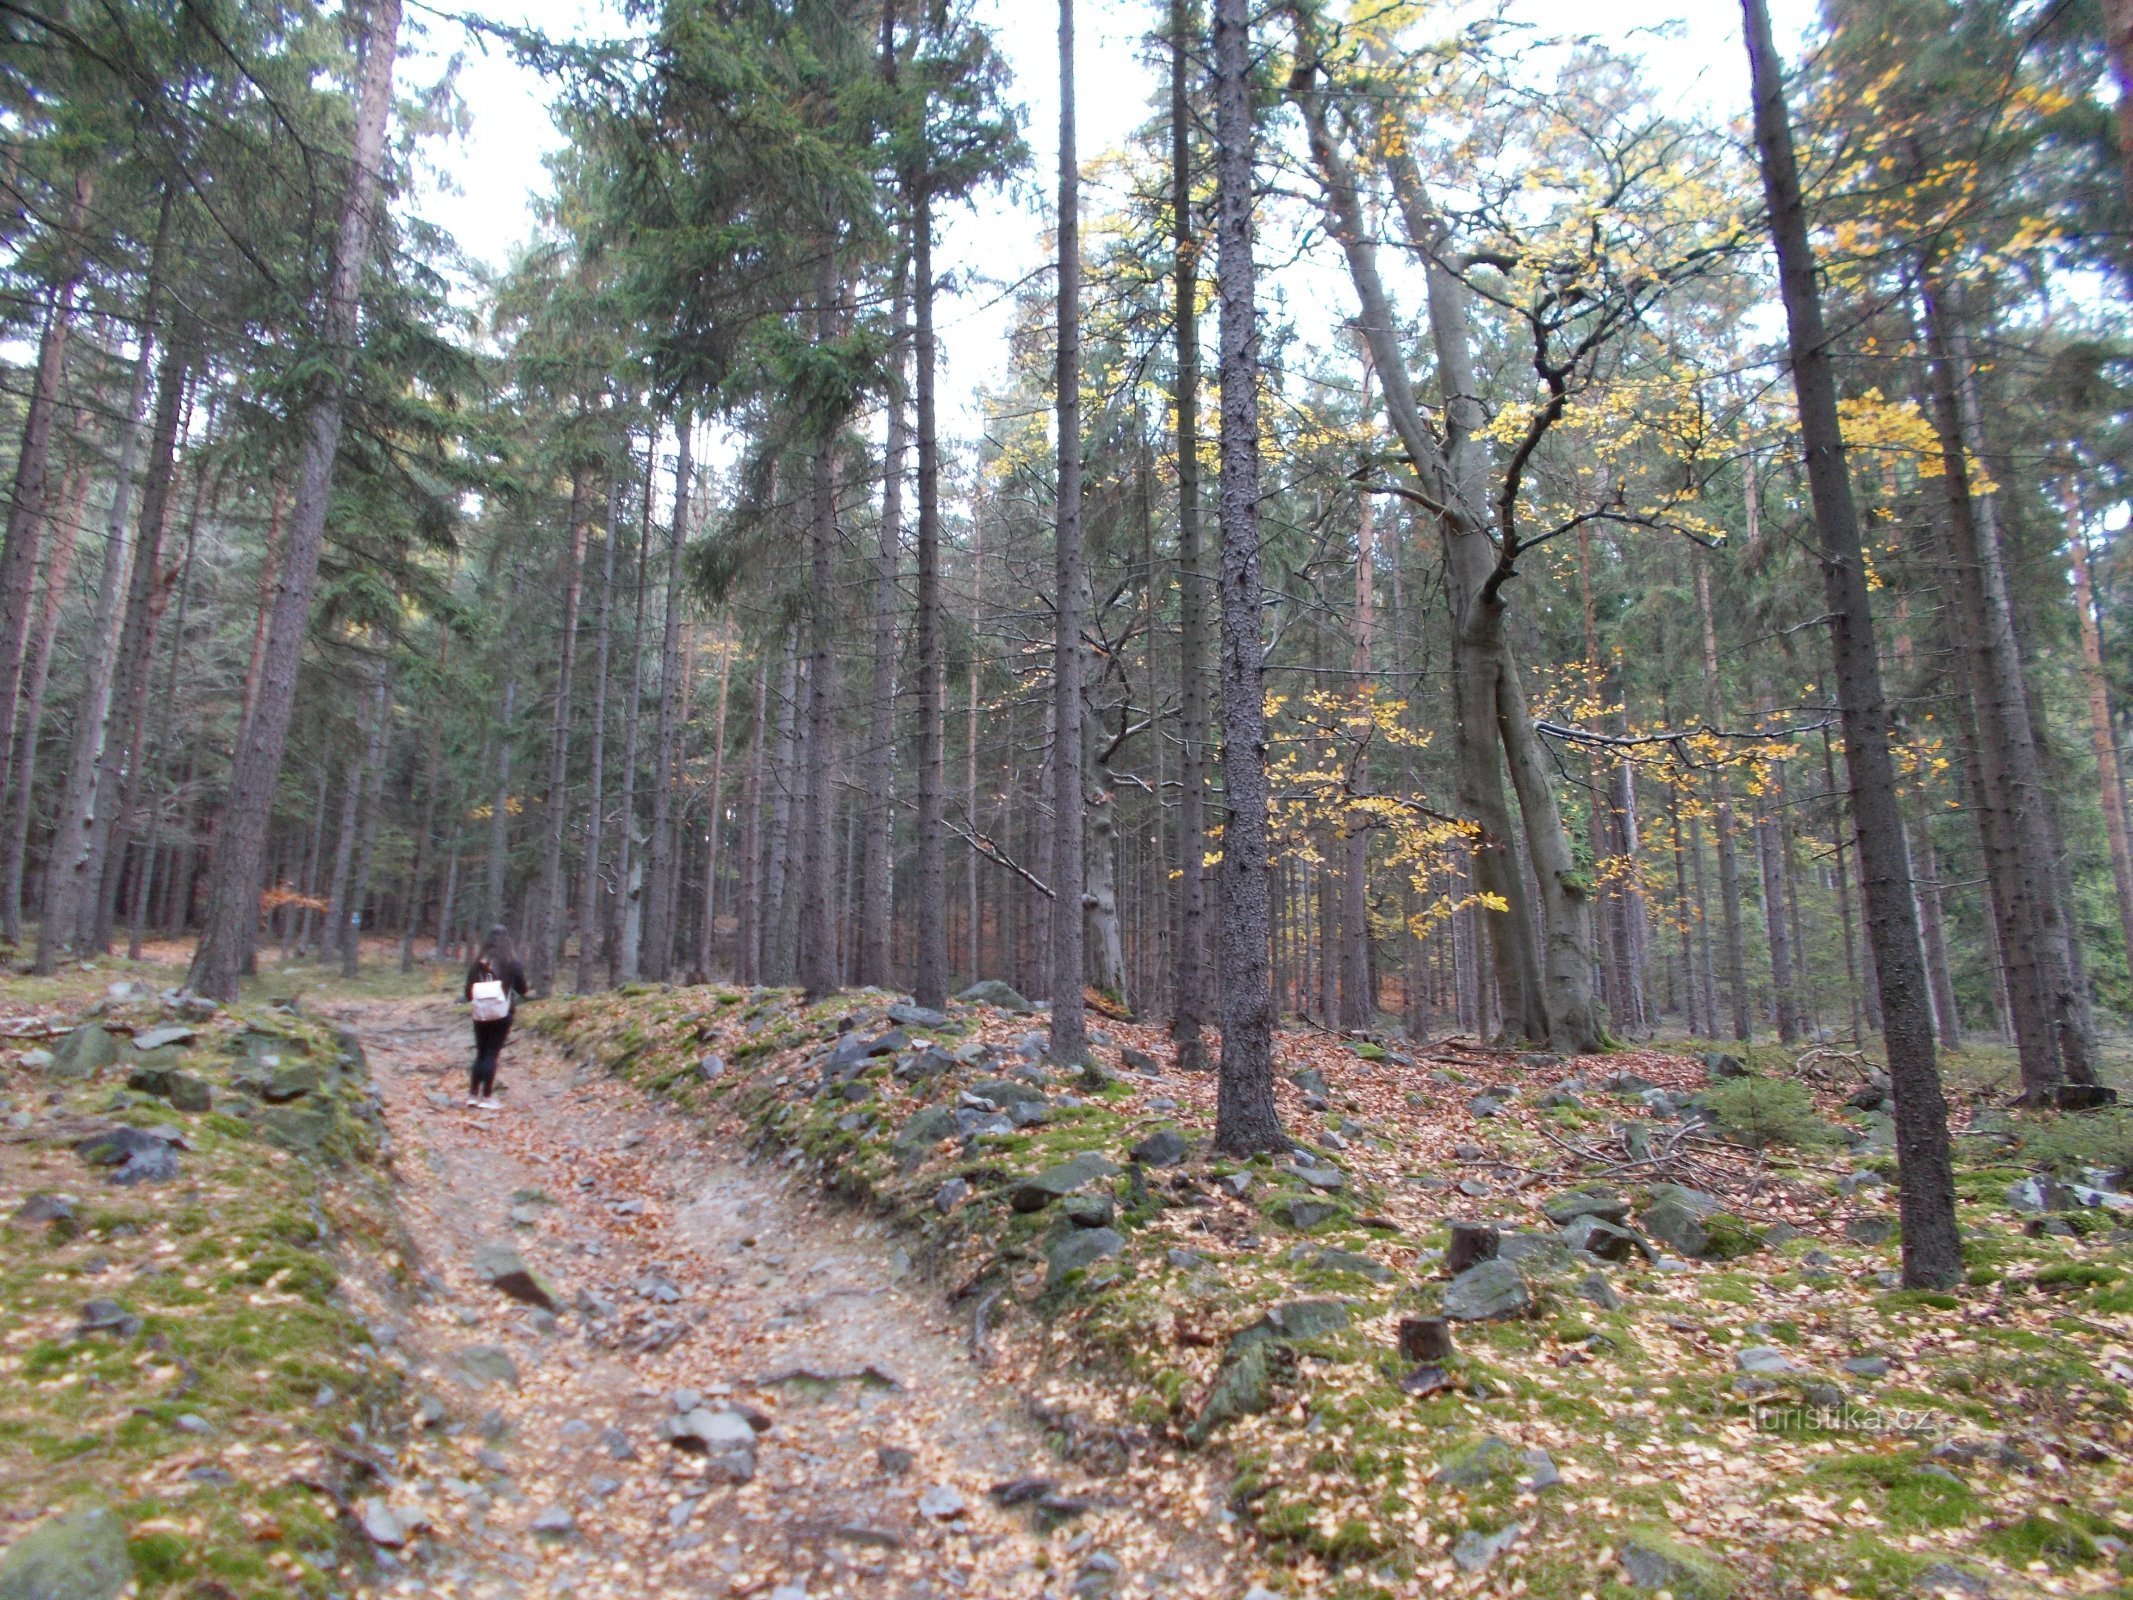 The road to Třemošná